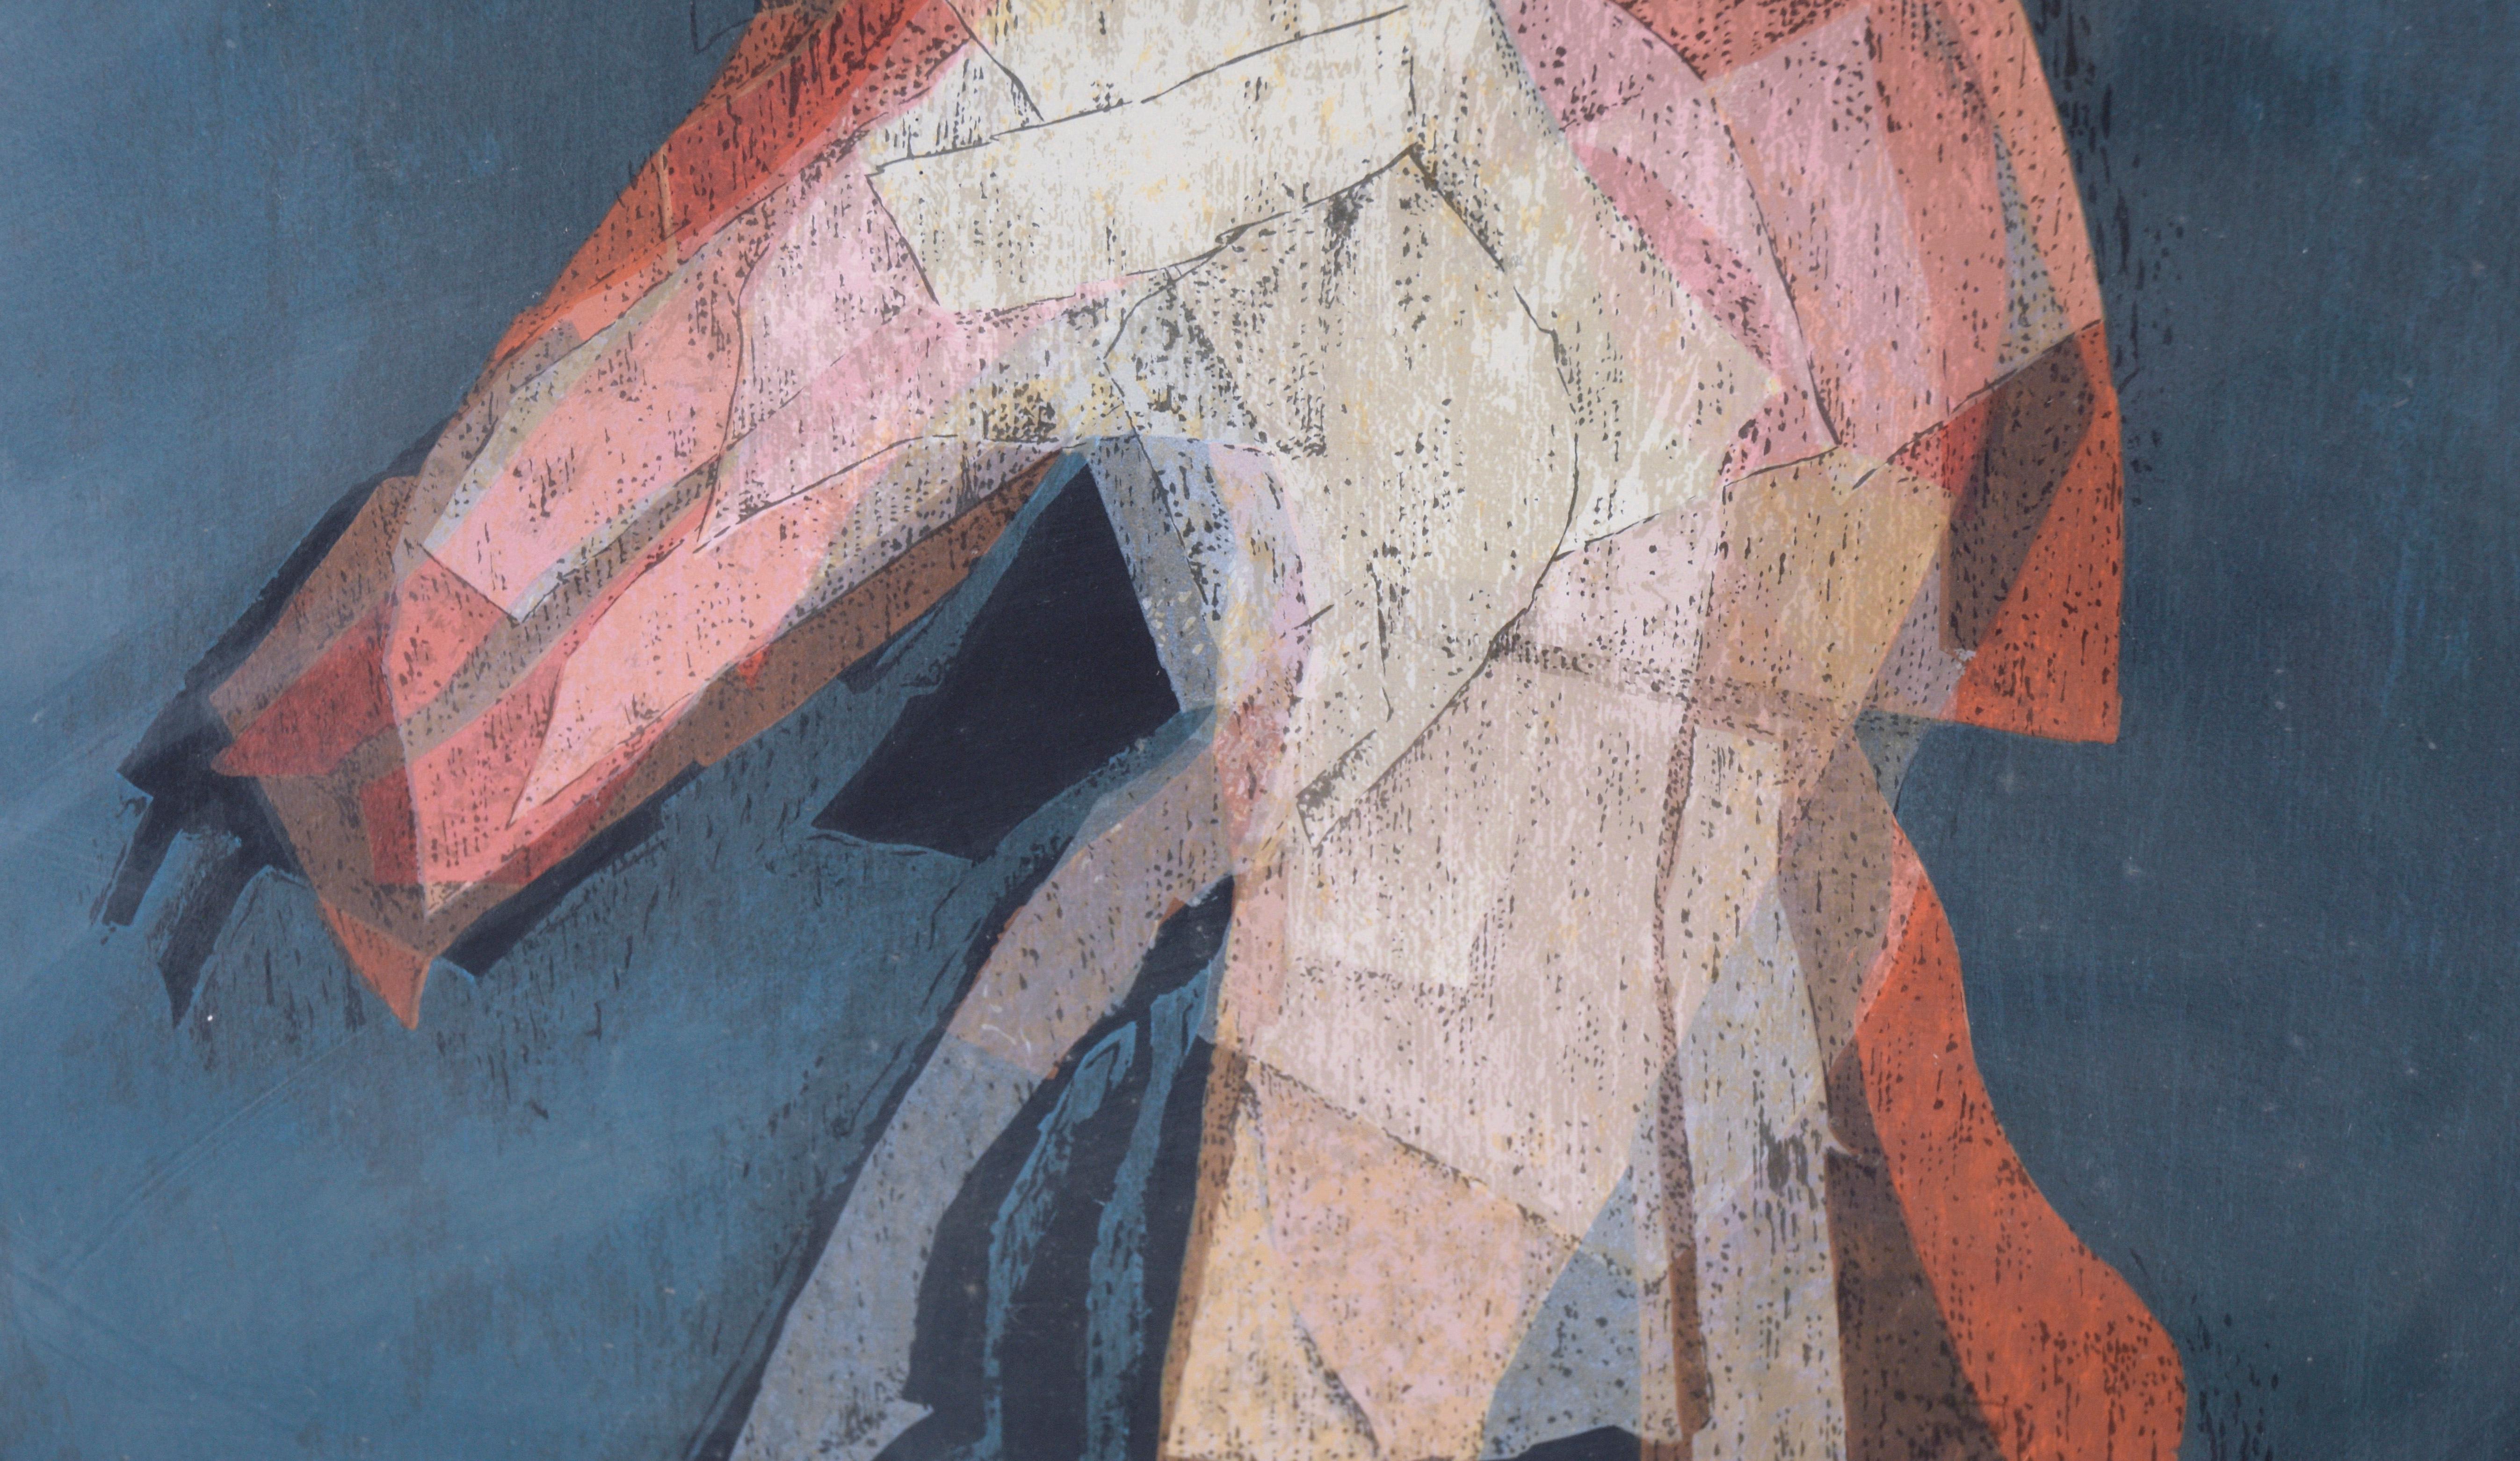 « Personaje » (caractéristique) - Sérigraphie figurative abstraite sur papier (n°146/175)

Figure abstraite aux allures de collage de Victor Chab (Argentin, né en 1930). Un personnage aux vêtements flottants est représenté sur un fond bleu foncé.